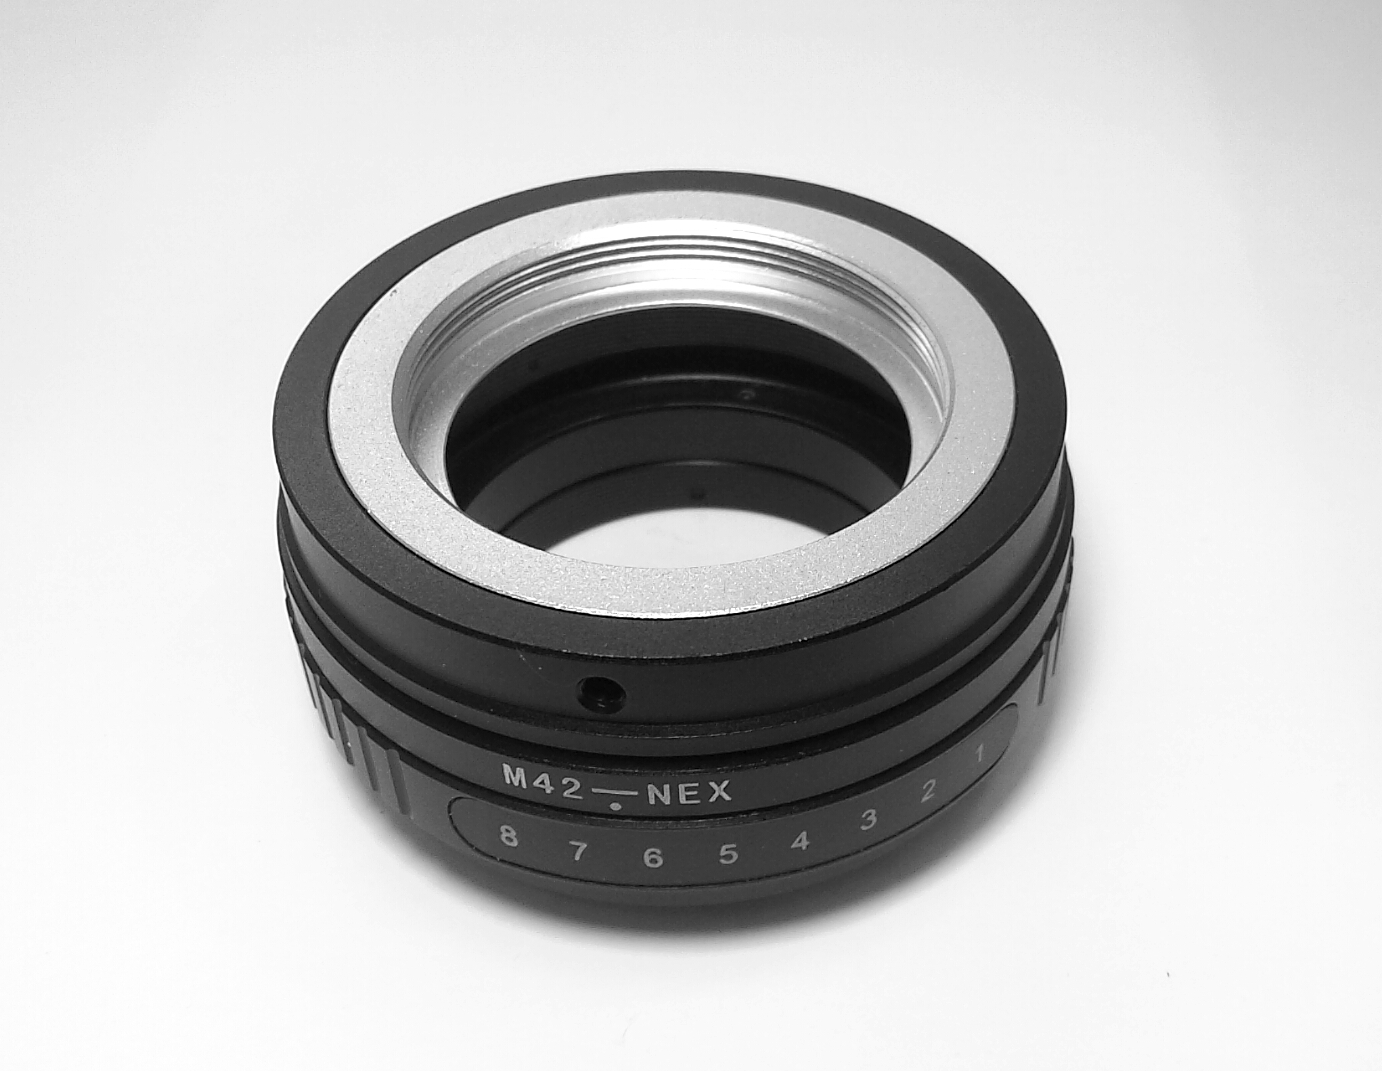 M42 Lens to Sony-NEX Body Tilt / Shift Adapter